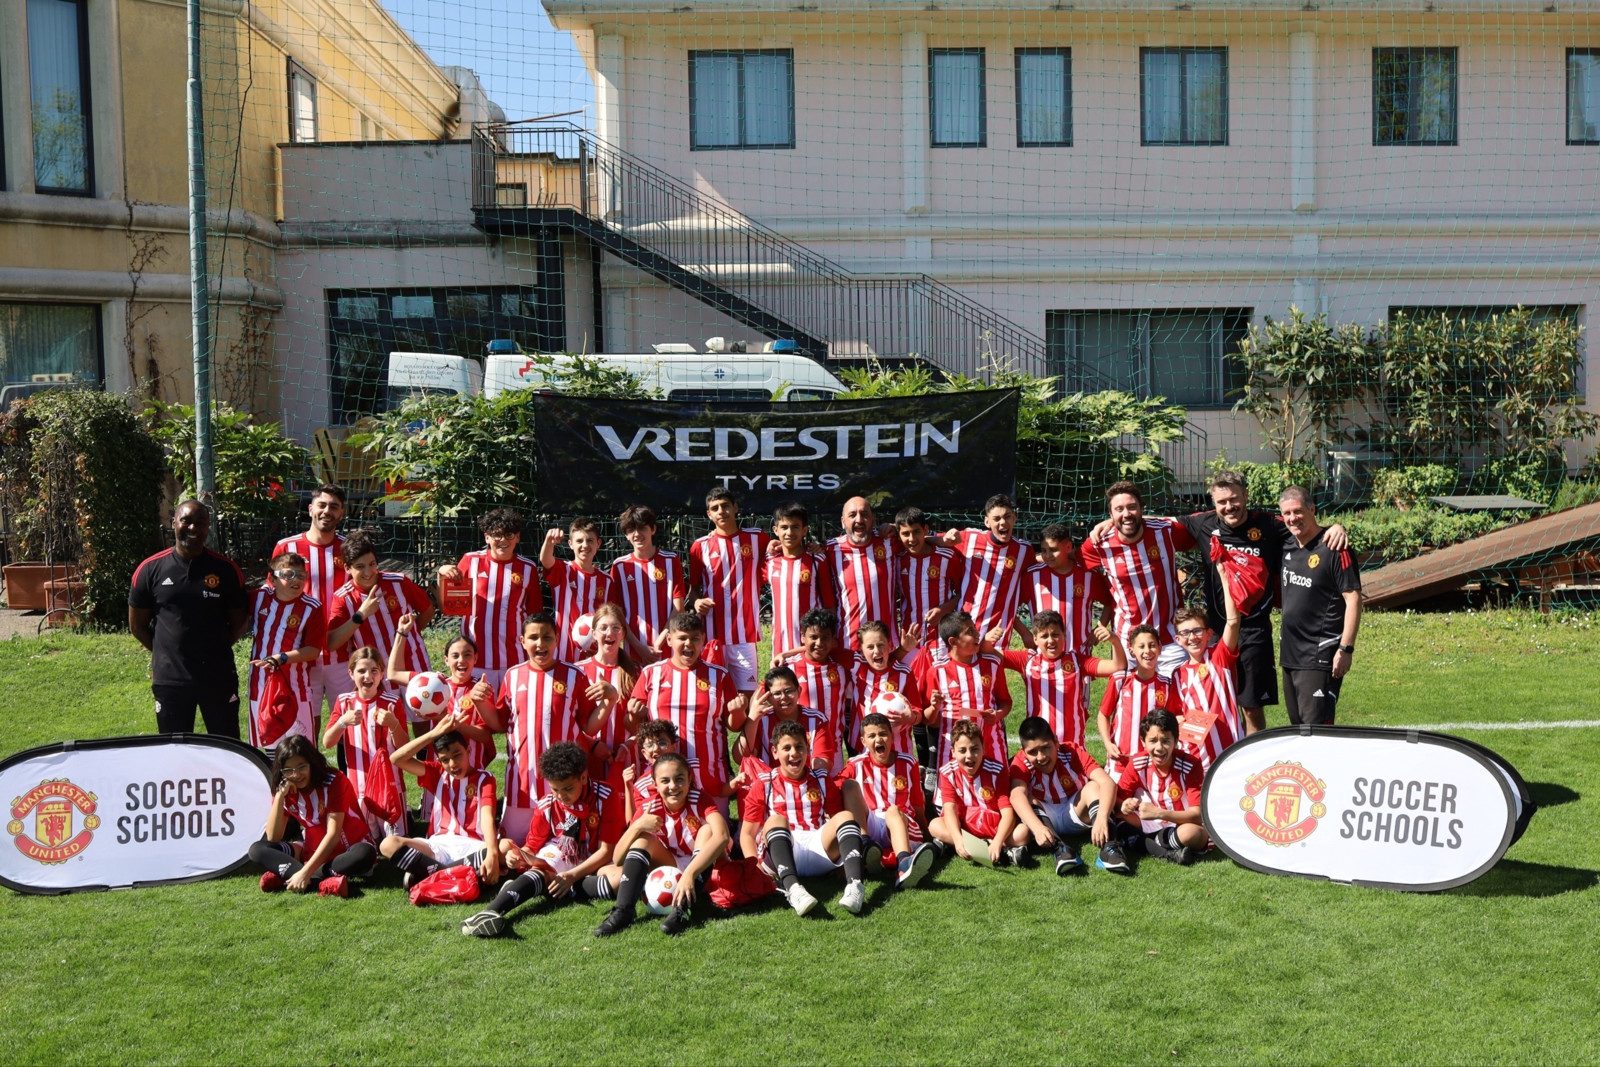 Am 25. März startete die „Manchester United Soccer School“ im Hotel Touring in Coccaglio, im italienischen Brescia.